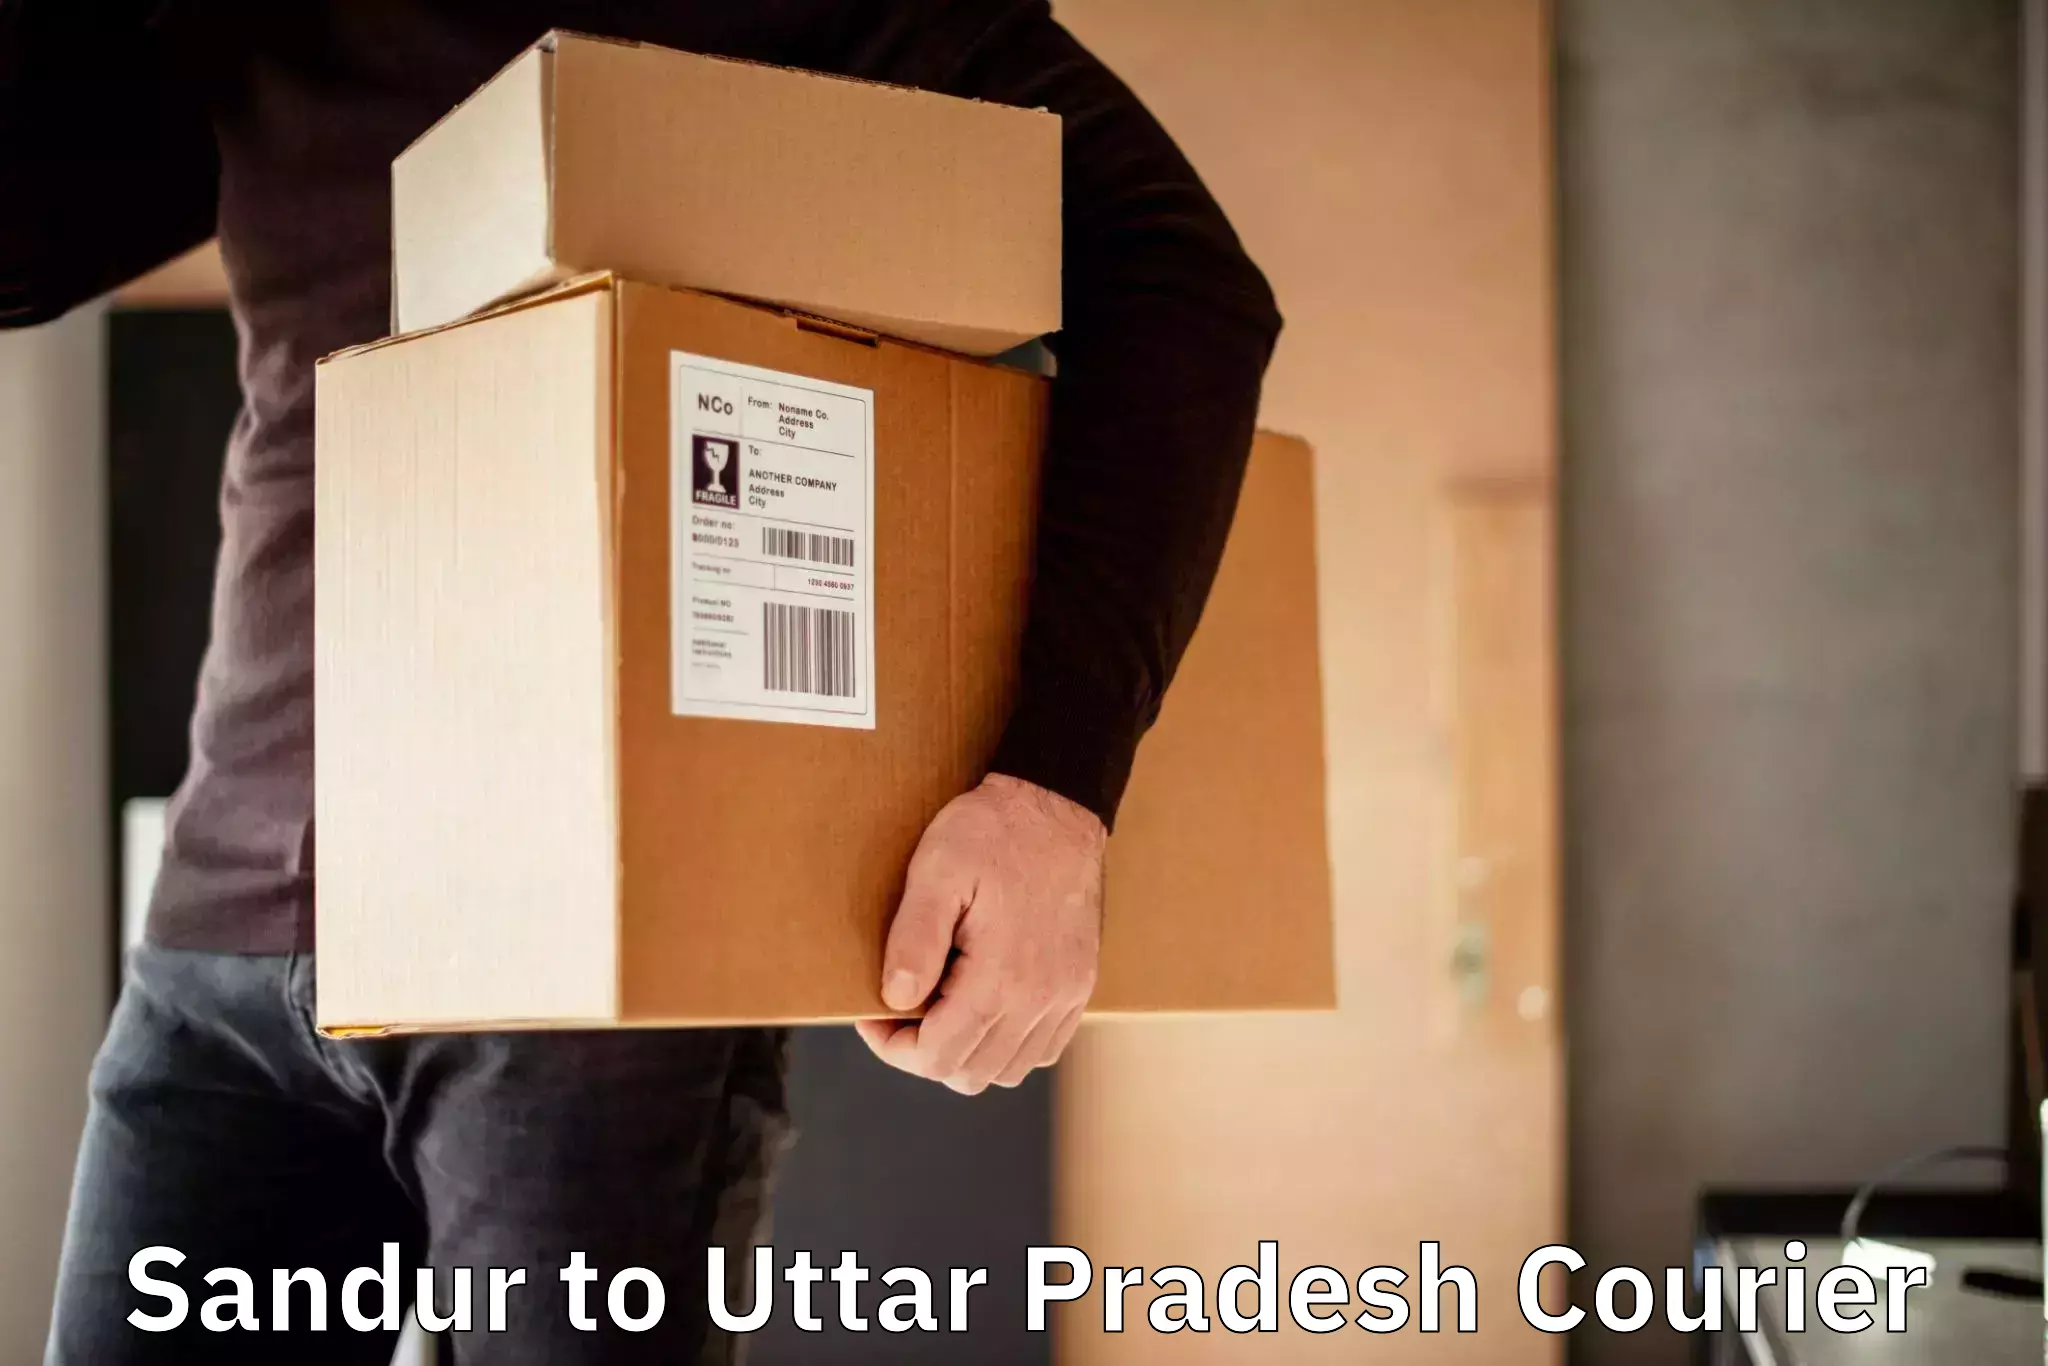 Personalized courier experiences Sandur to Varanasi